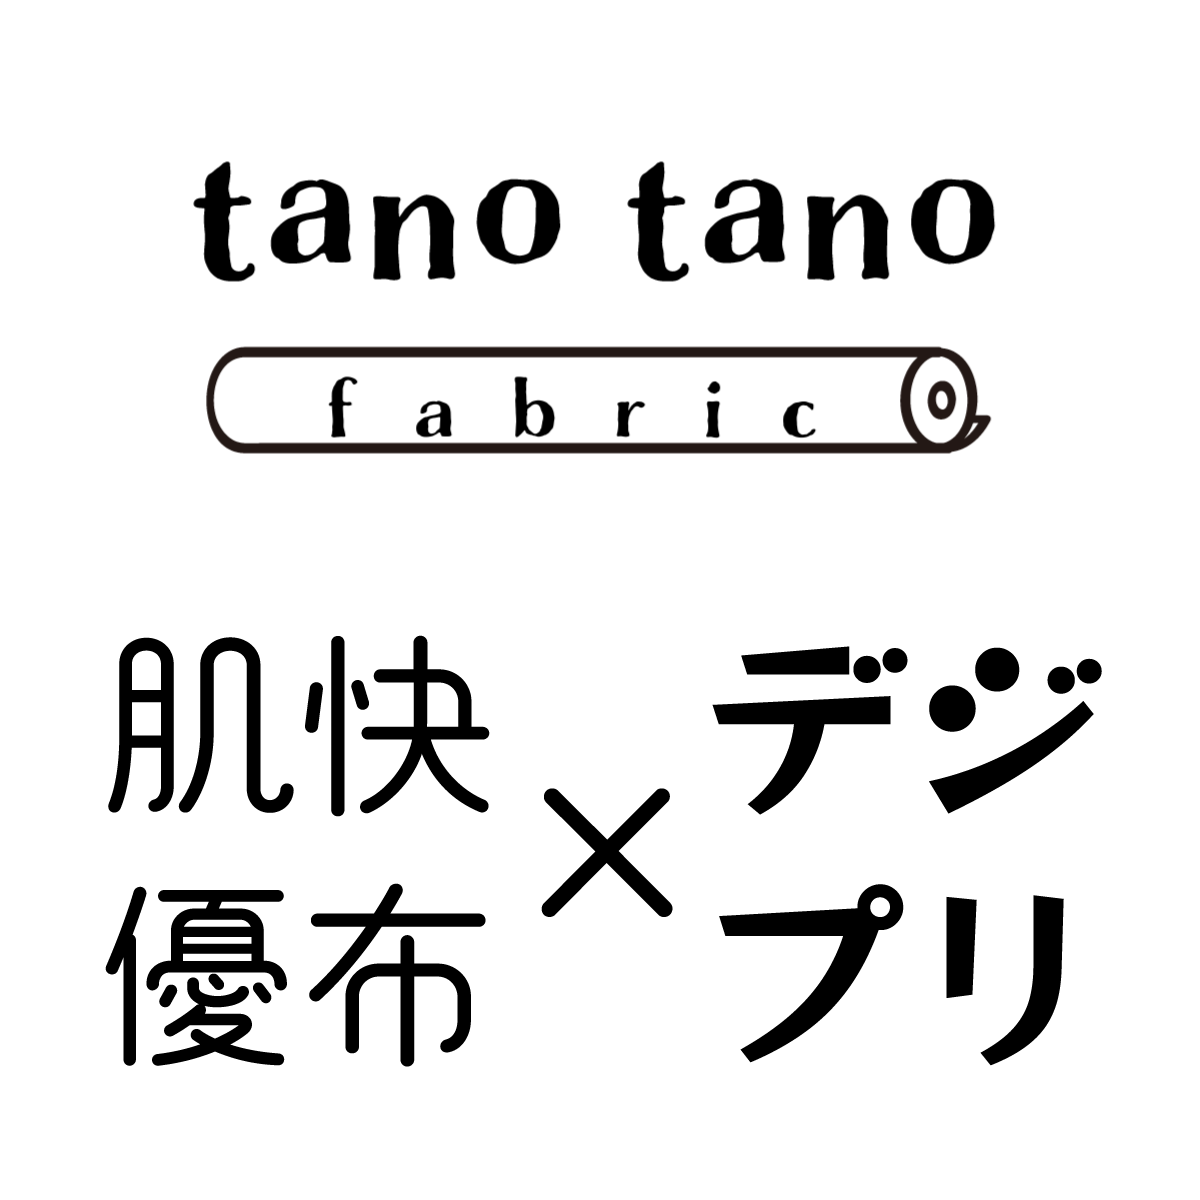 ニット生地ショップ  tano tano fabric（タノタノファブリック）